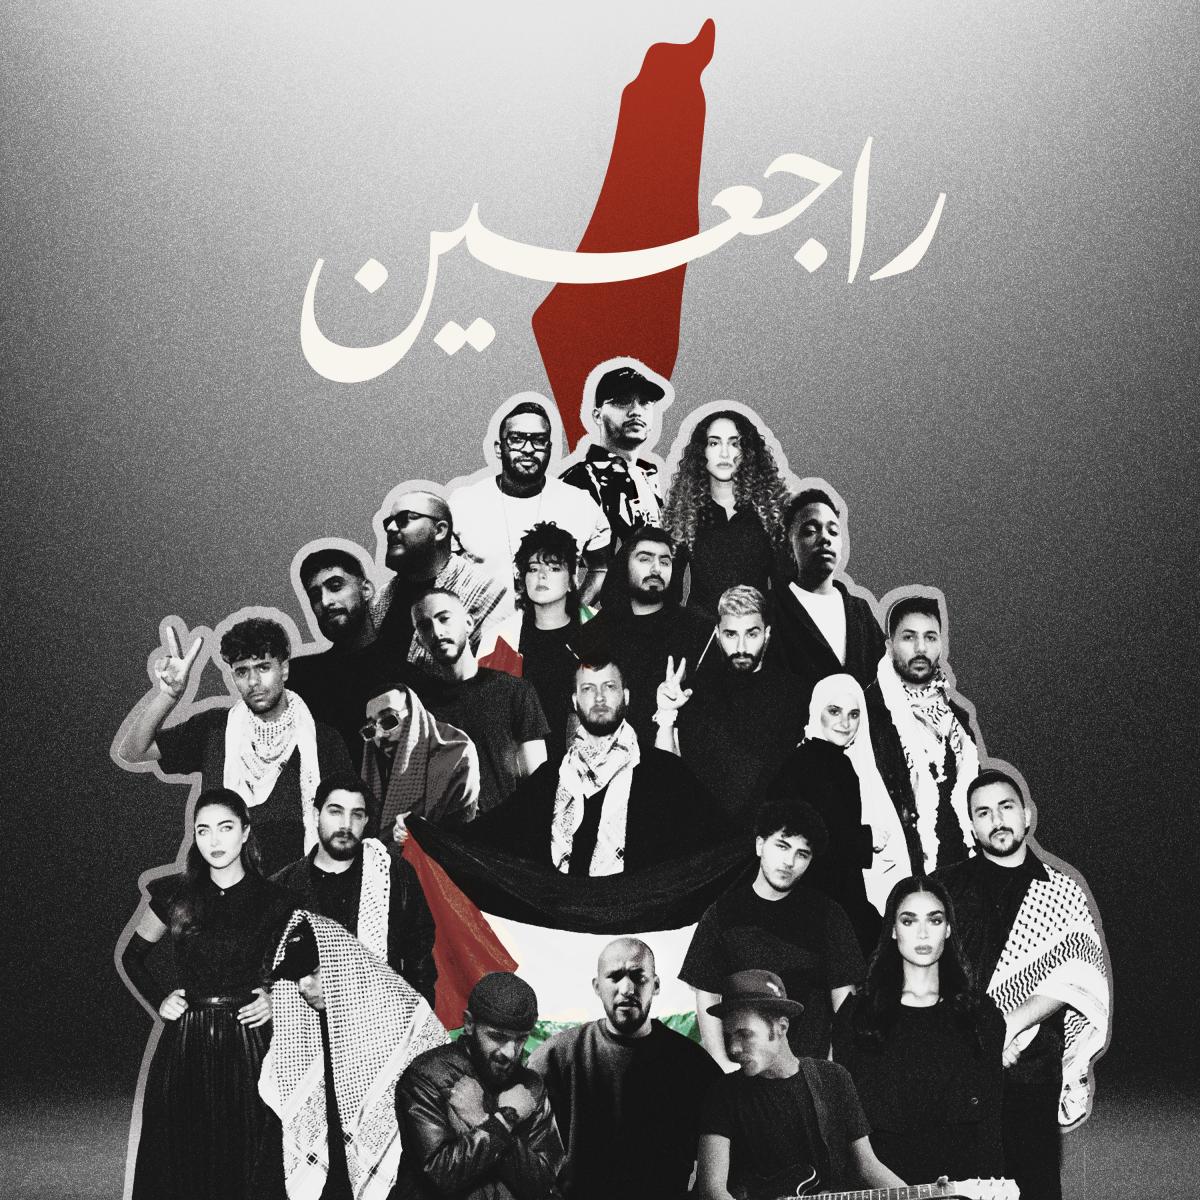 26 فناناً من الشرق الأوسط وأفريقيا يغنوا "راجعين" لـ فلسطين